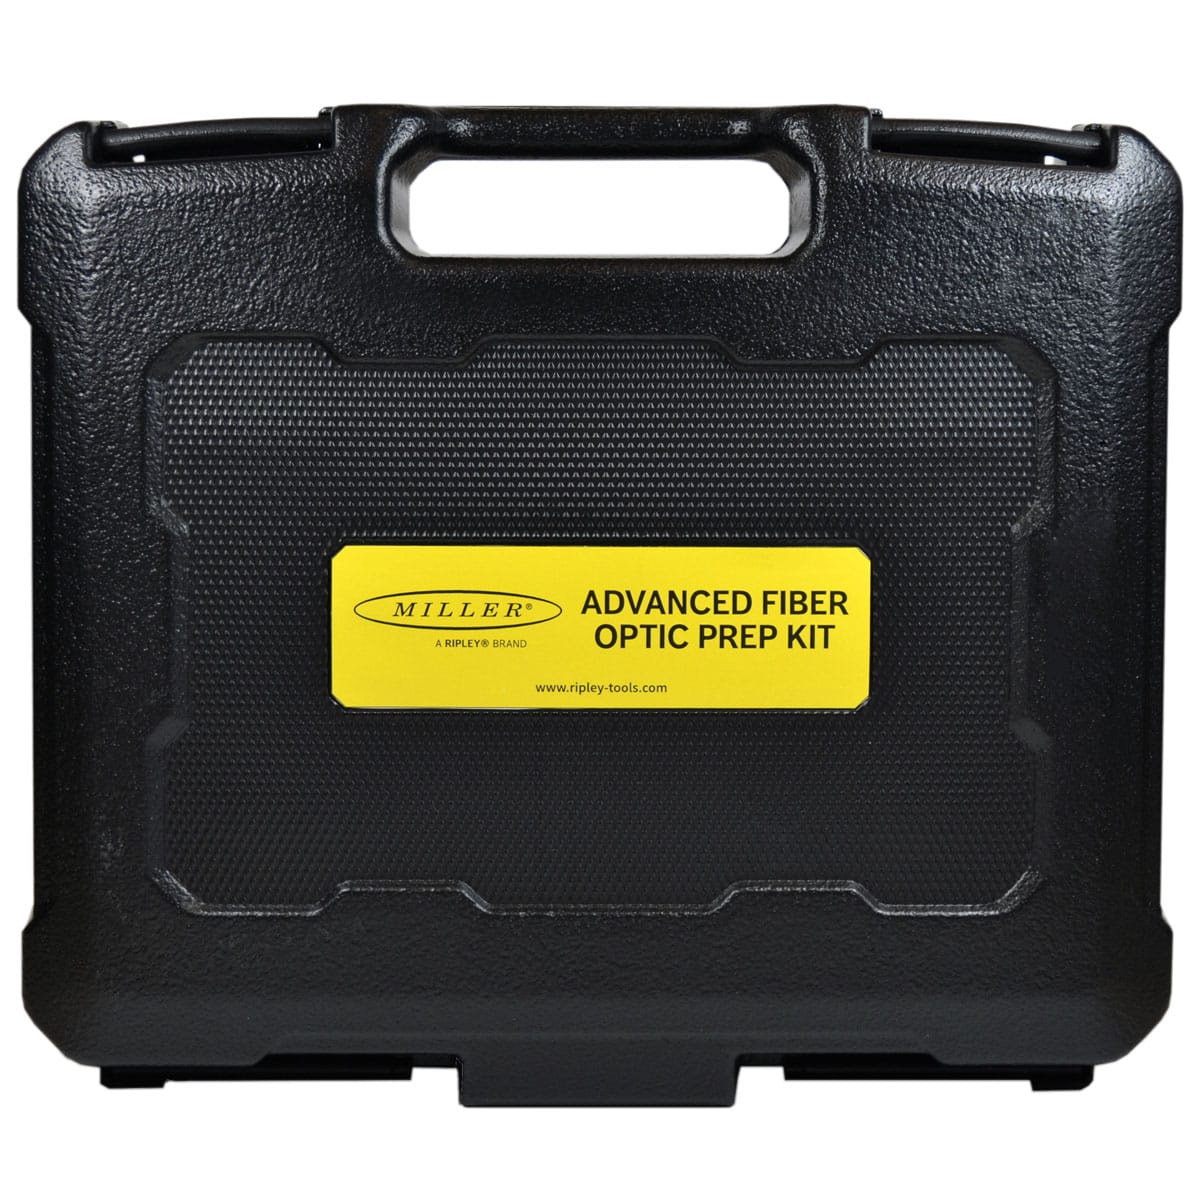 Advanced Fiber Kit Case w/ FO 103S and MB04-7000 thumbnail 3